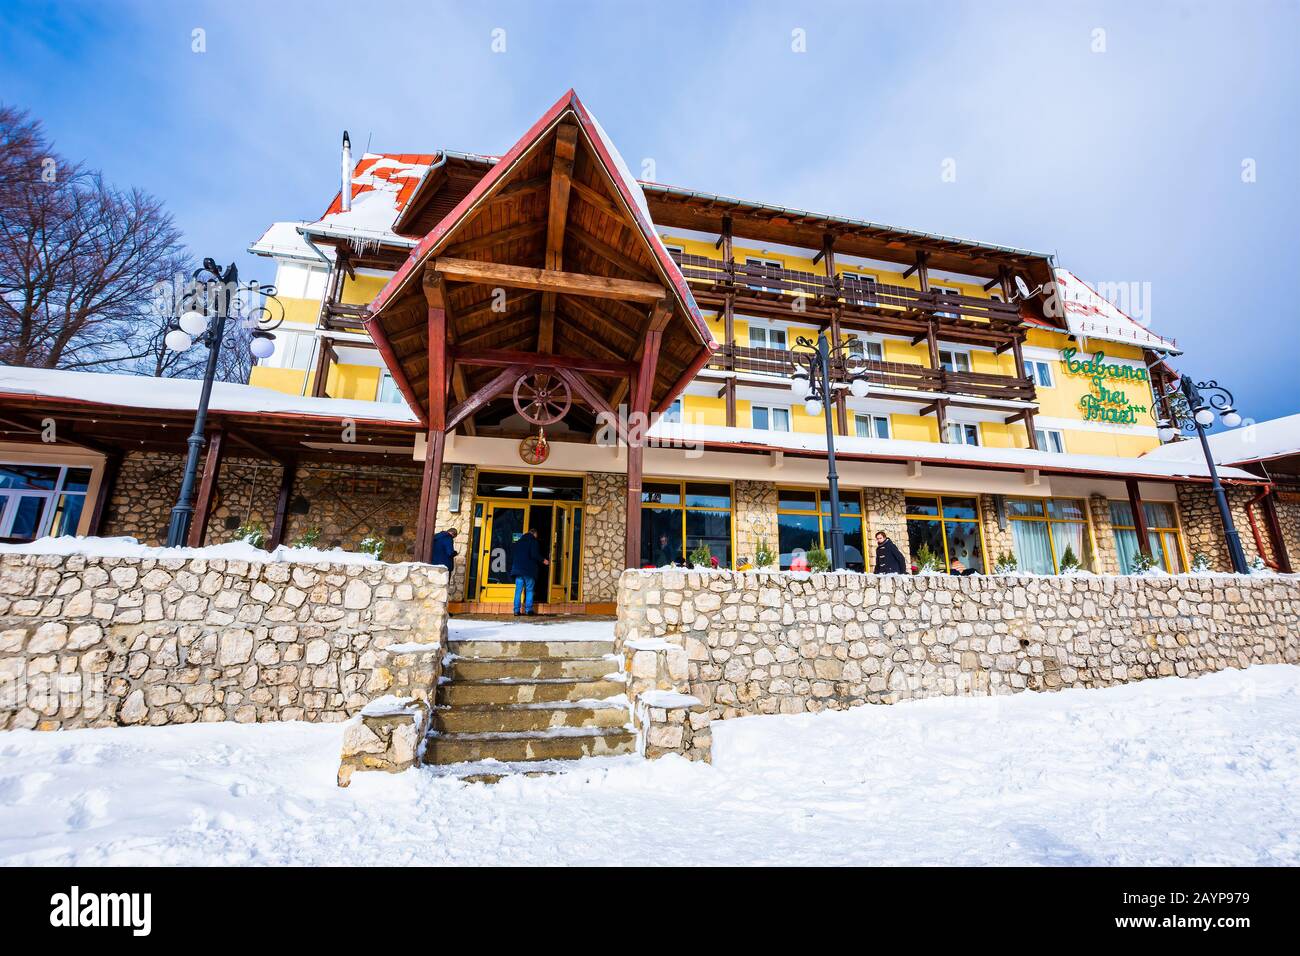 Chalet Trei Brazi en hiver à 1120 mètres d'altitude et à 5 km de la station de ski Predeal, de la vallée de Prahova, des montagnes de Bucegi, en Roumanie. Banque D'Images